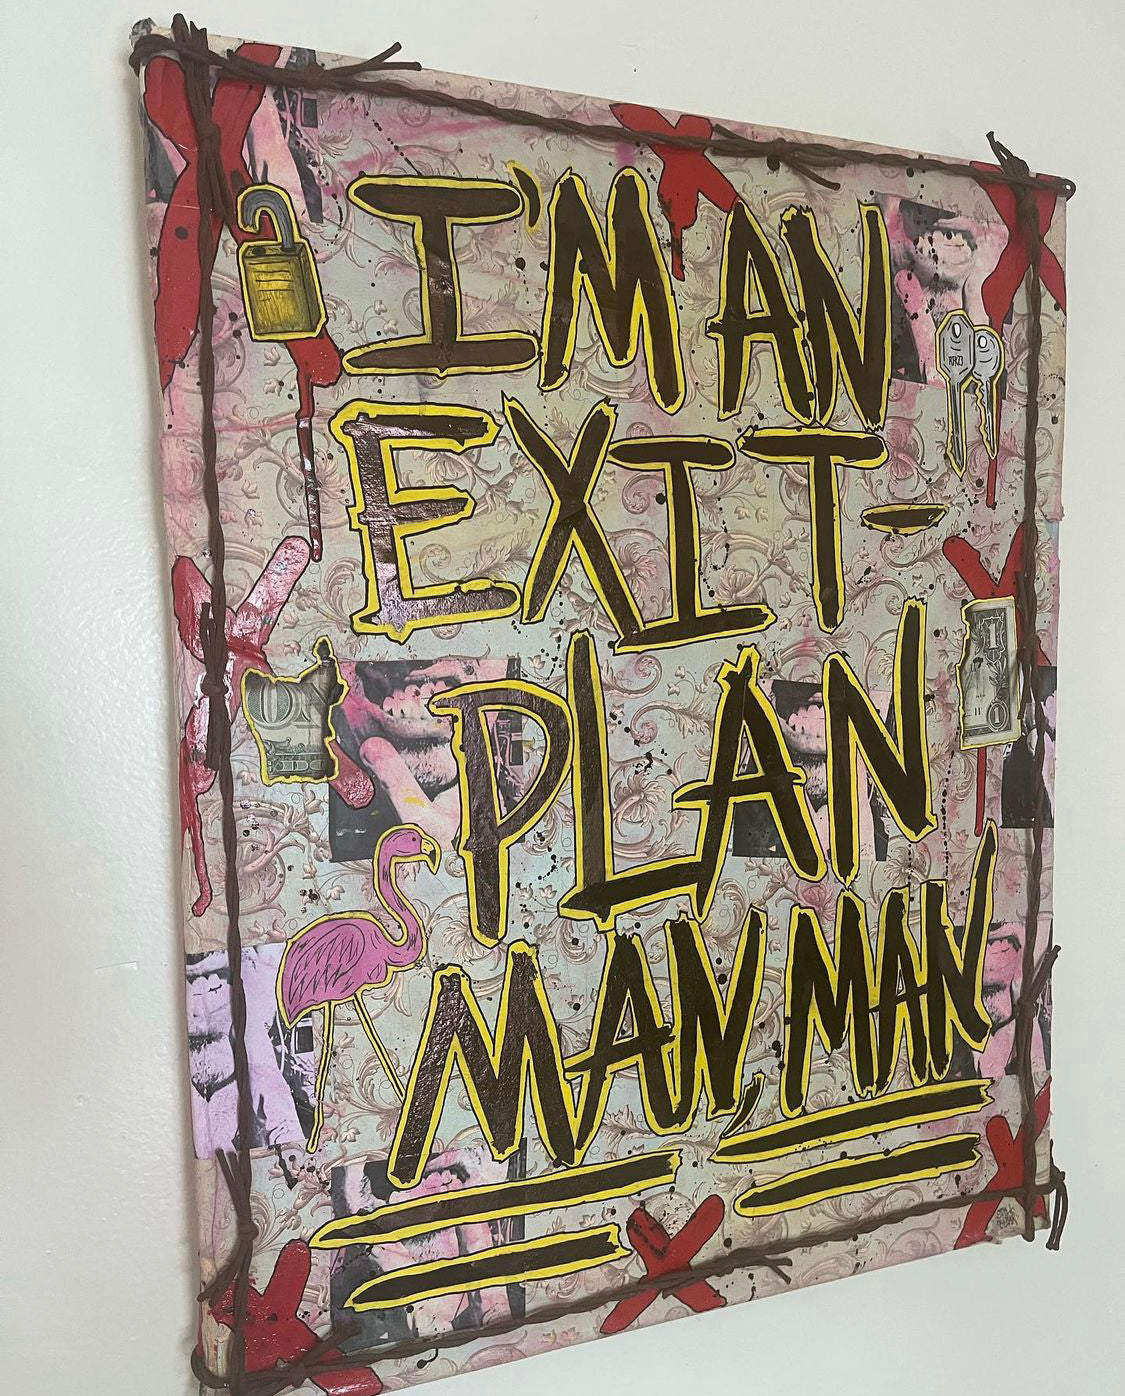 Still Hear "Exit Plan Man" (2022)